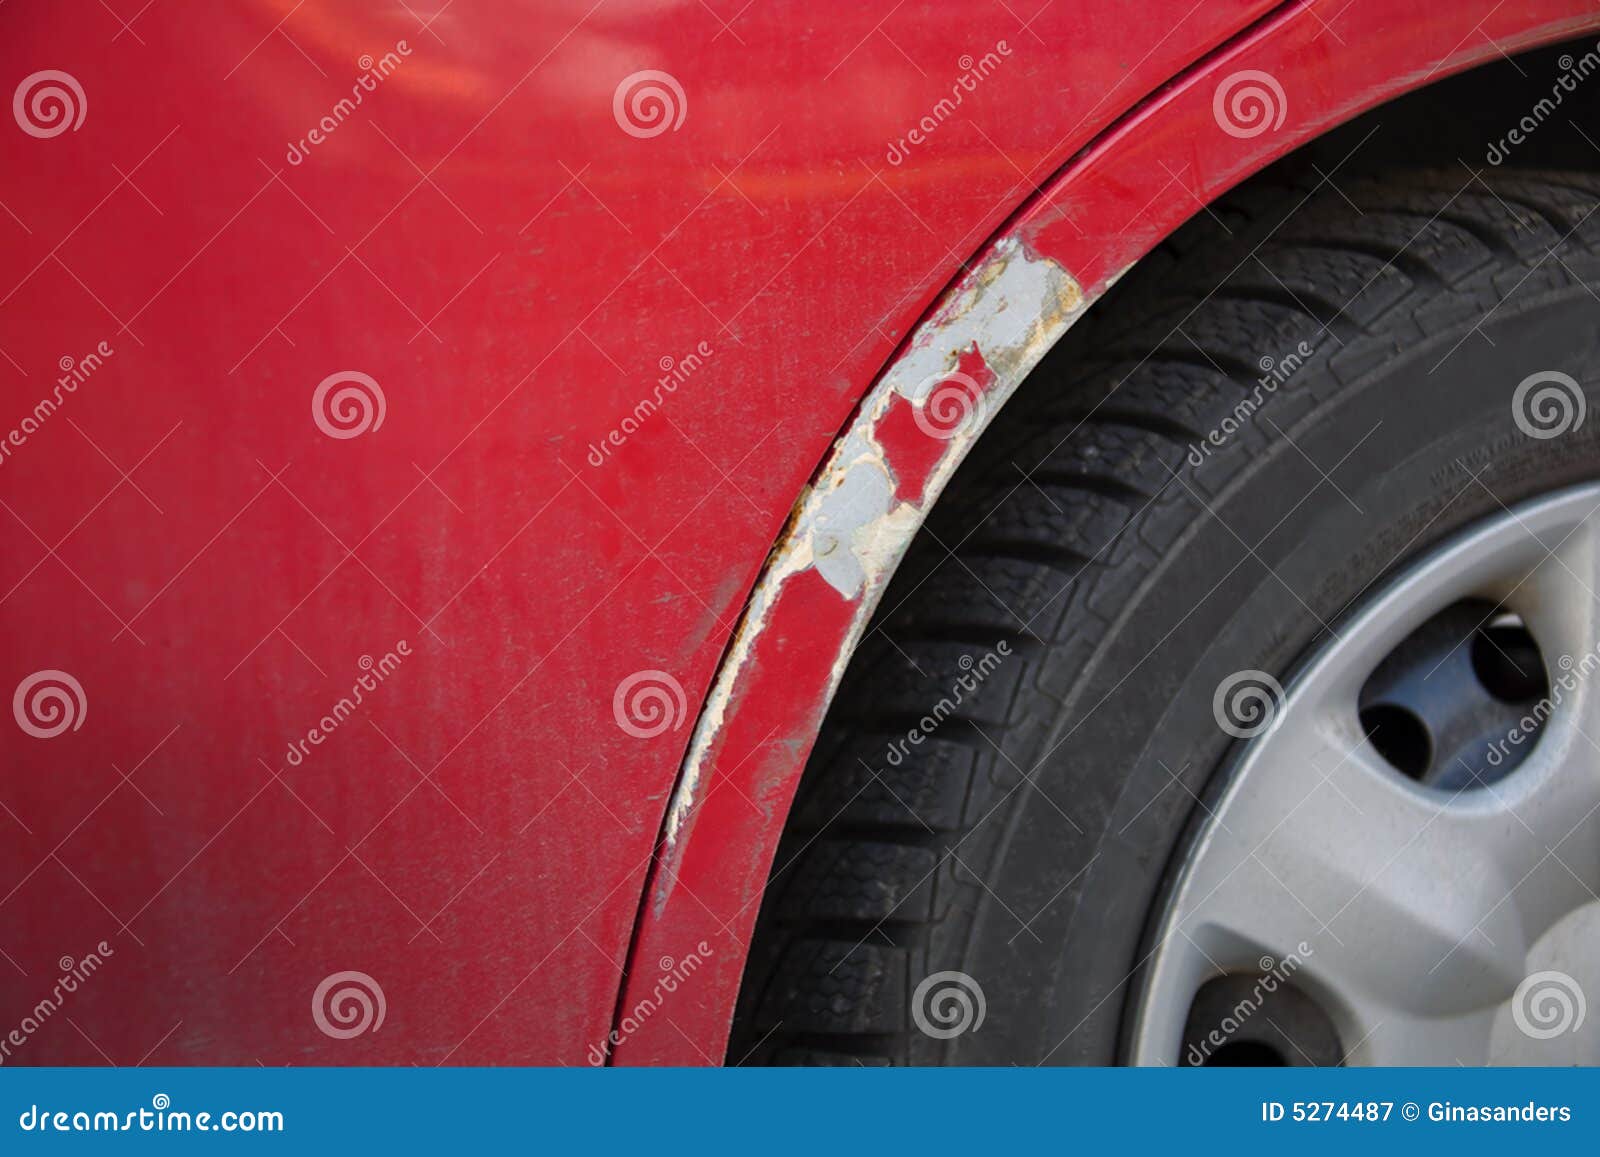 Почему вздулась краска на кузове Hyundai Accent фото